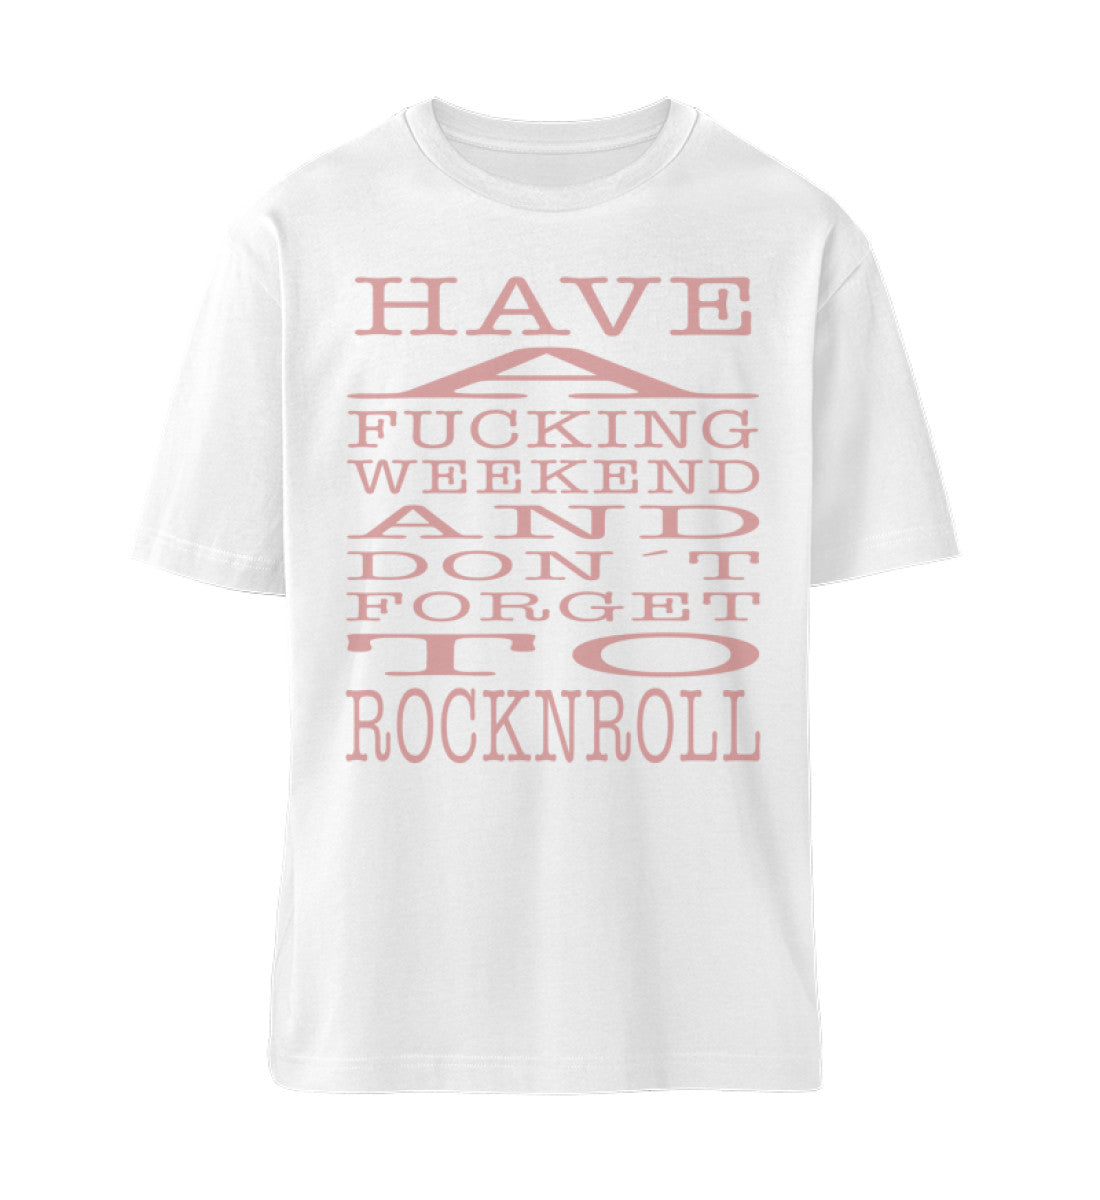 Weißes T-Shirt Unisex für Damen und Herren Relaxed Fit bedruckt in weiß mit Design der Kollektion Rocknroll Weekend und dem Logo Schriftzug von Roger Rockawoo Clothing